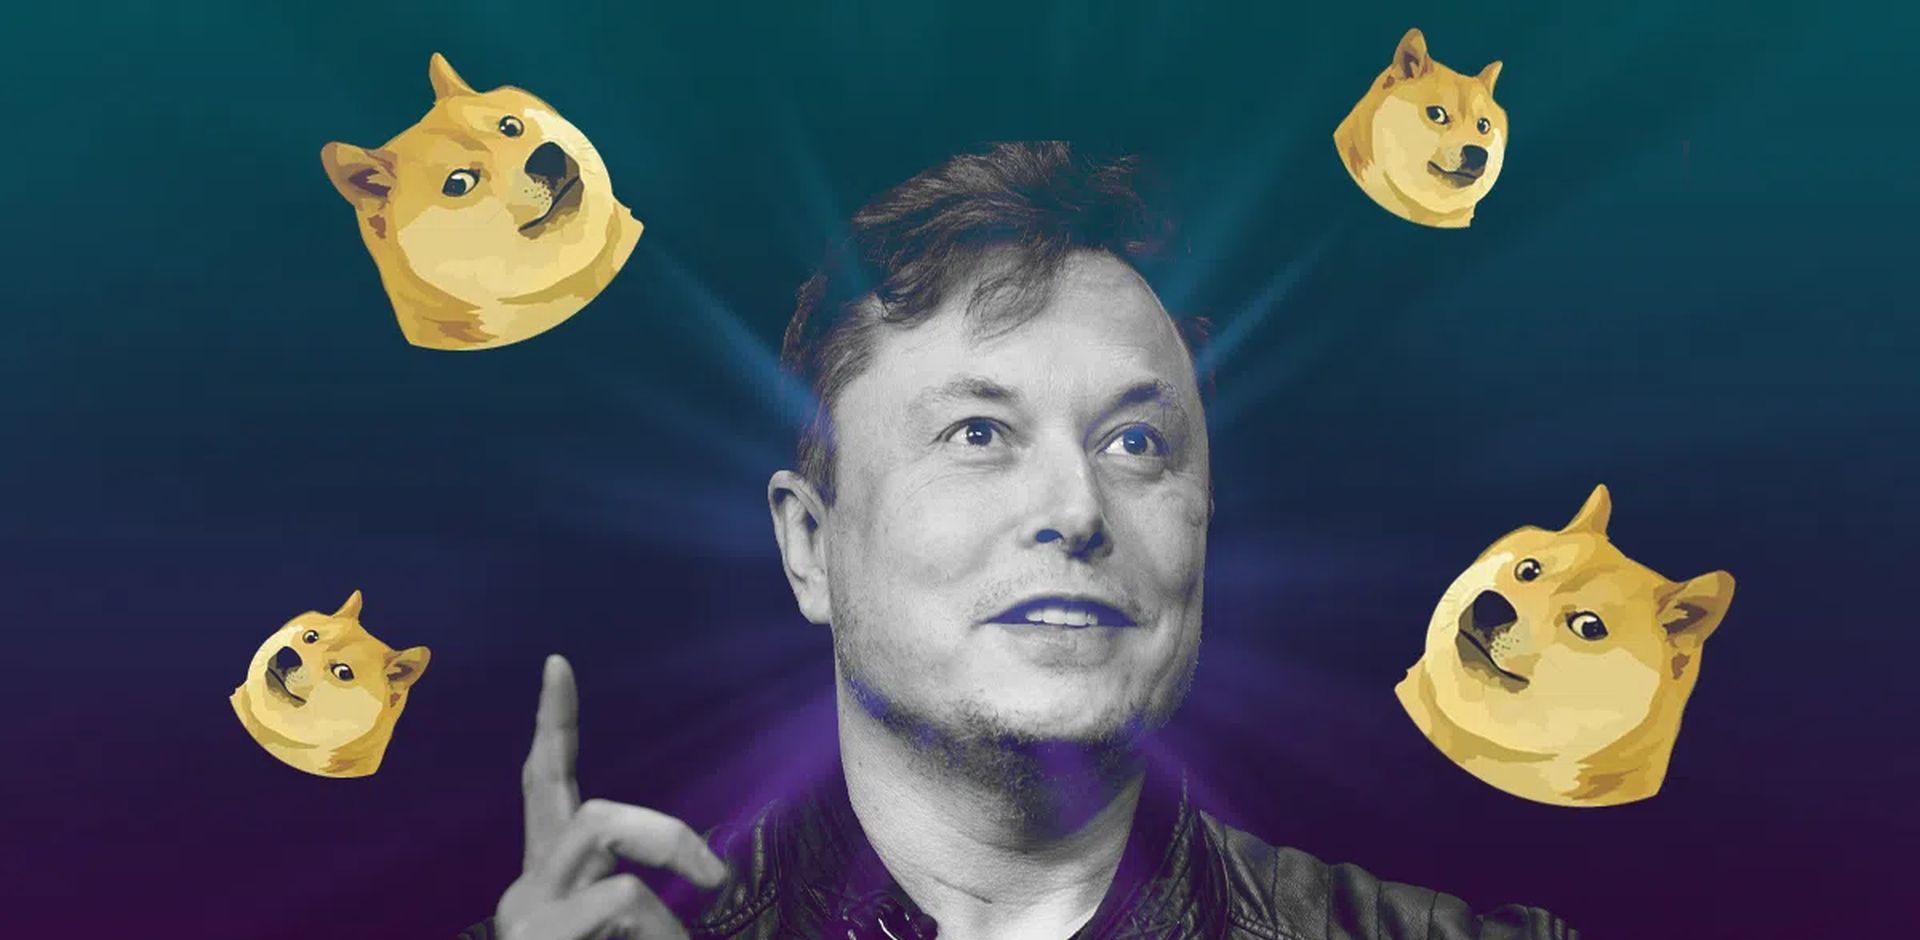 Selv efter det faktum, at Elon Musk sagsøgte over påstande om dogecoin-pyramidespil, siger han det "Jeg vil blive ved med at støtte Dogecoin" og hævder også, at han stadig køber.